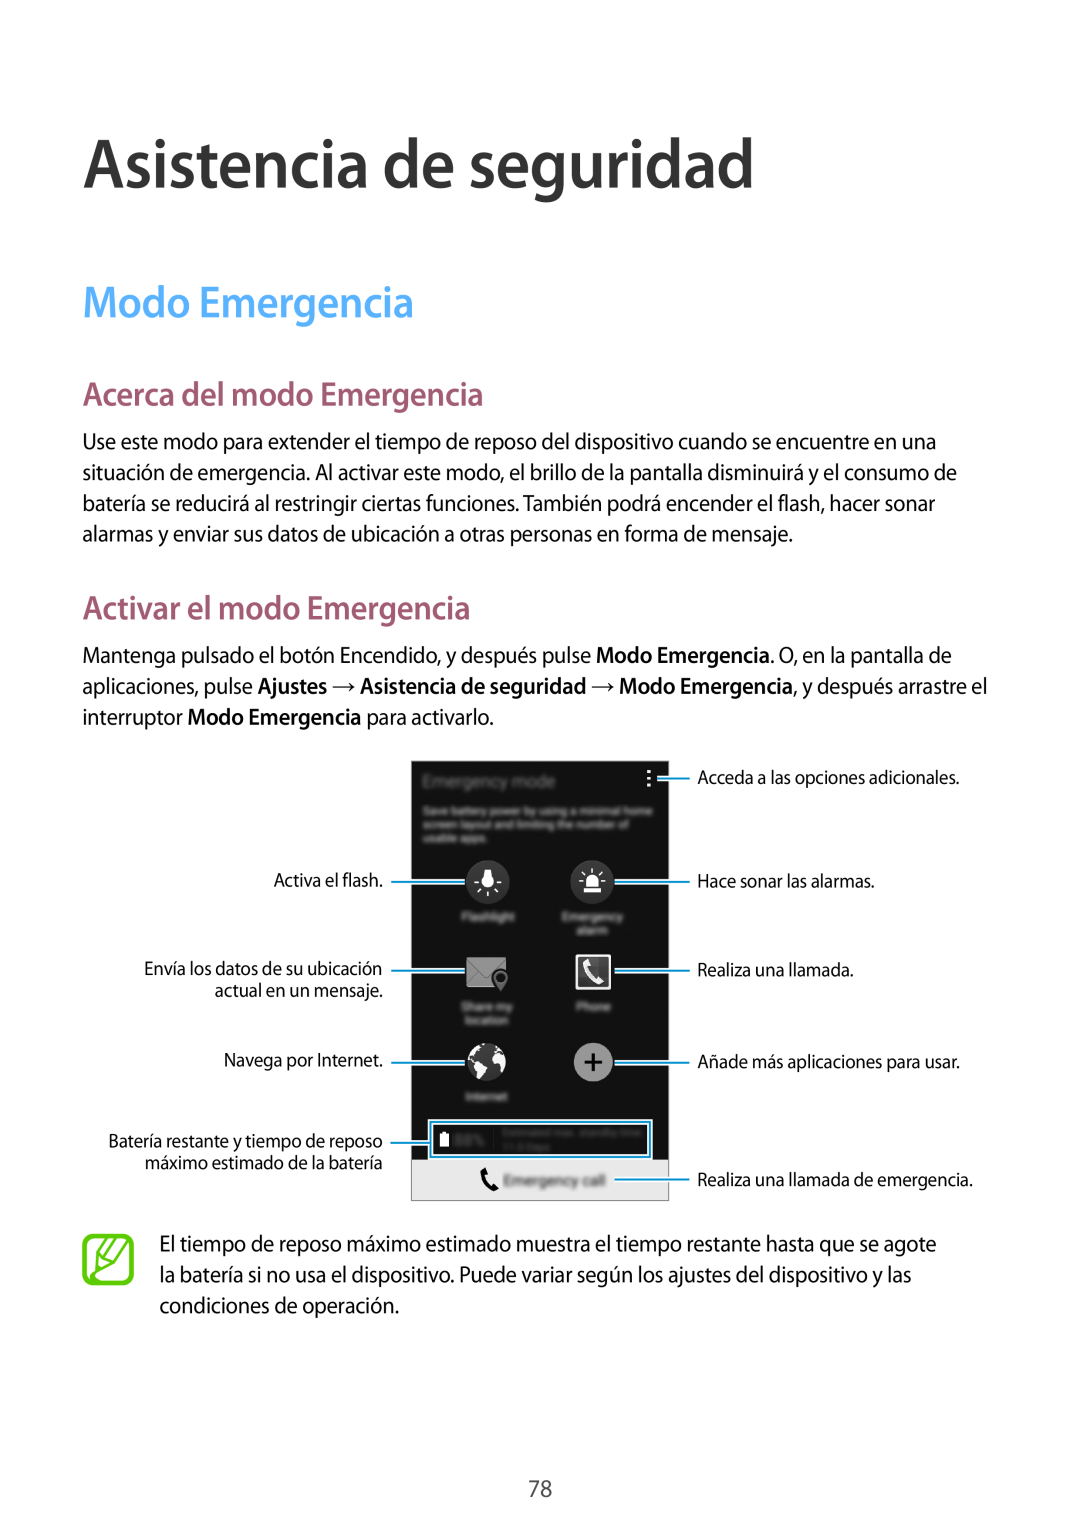 Samsung SM-A500FZDUPHE Asistencia de seguridad, Modo Emergencia, Acerca del modo Emergencia, Activar el modo Emergencia 